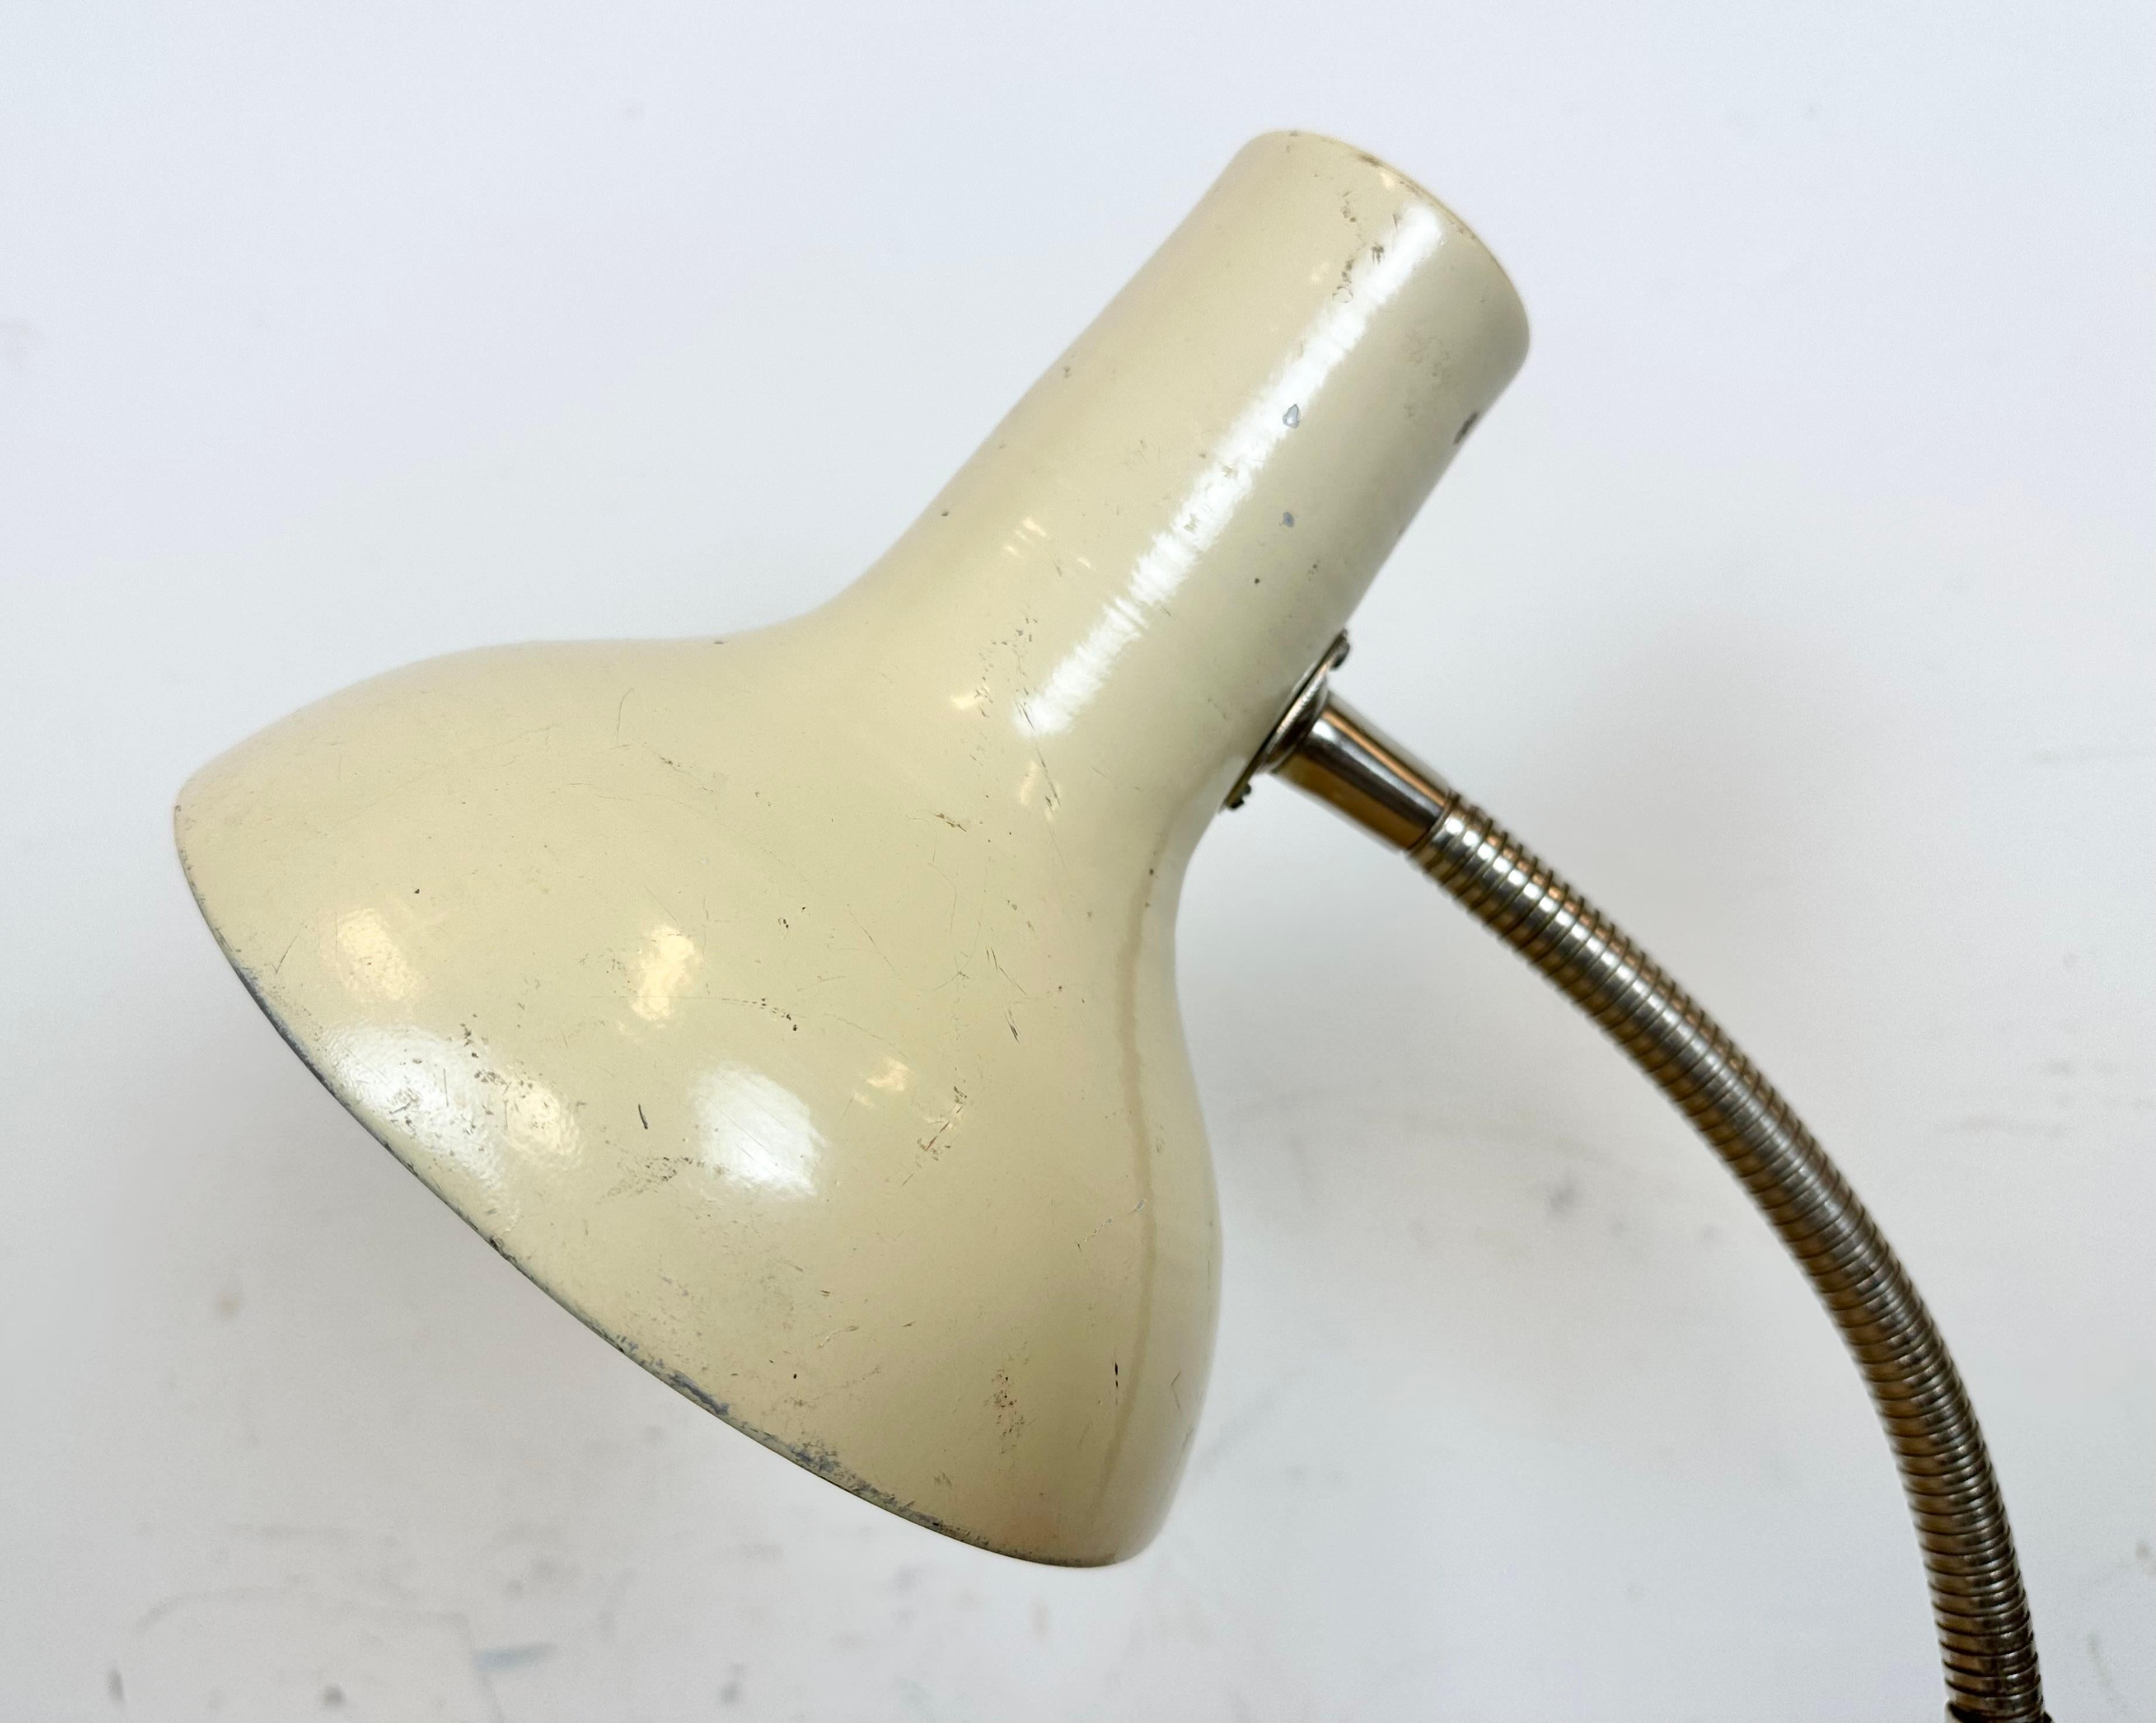 Industrielle Gooseneck-Tischlampe in Beige, 1960er-Jahre (20. Jahrhundert)